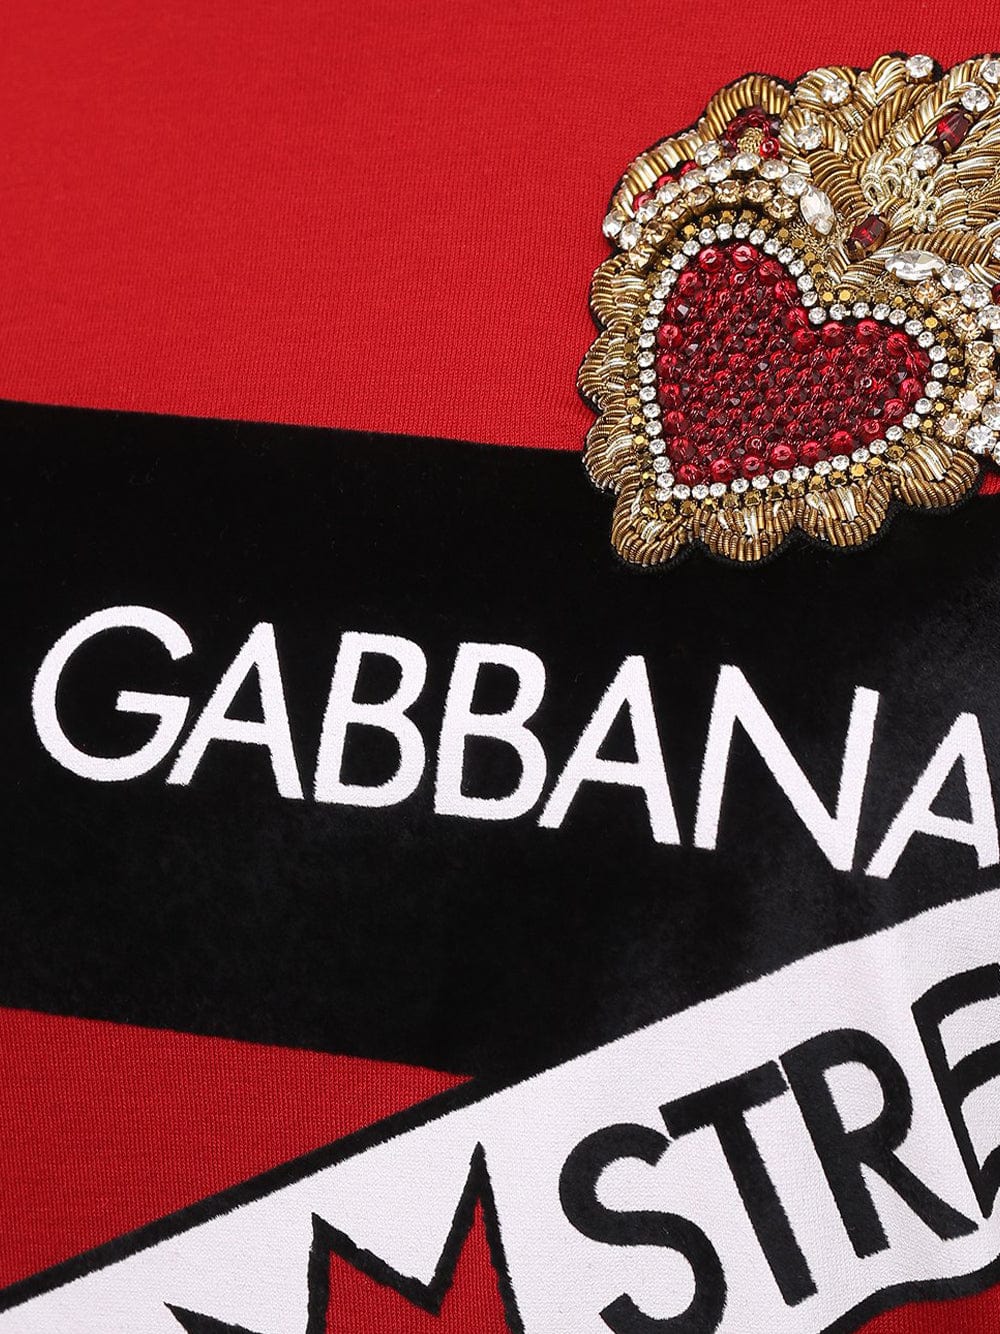 Dolce & Gabbana Logos Printed T-Shirt